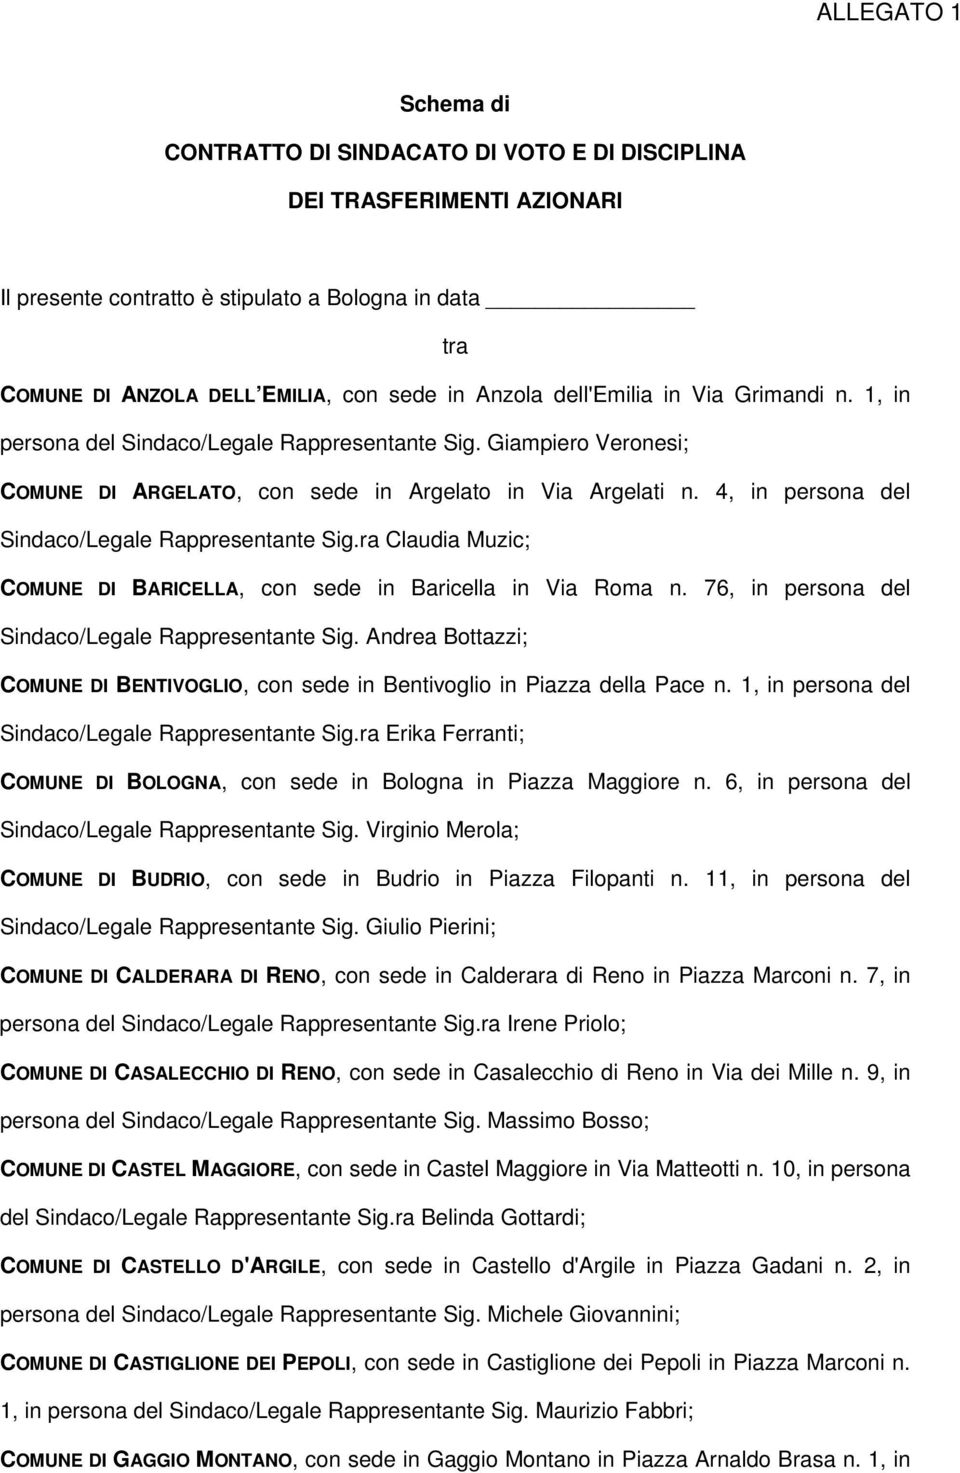 4, in persona del Sindaco/Legale Rappresentante Sig.ra Claudia Muzic; BARICELLA, con sede in Baricella in Via Roma n. 76, in persona del Sindaco/Legale Rappresentante Sig.